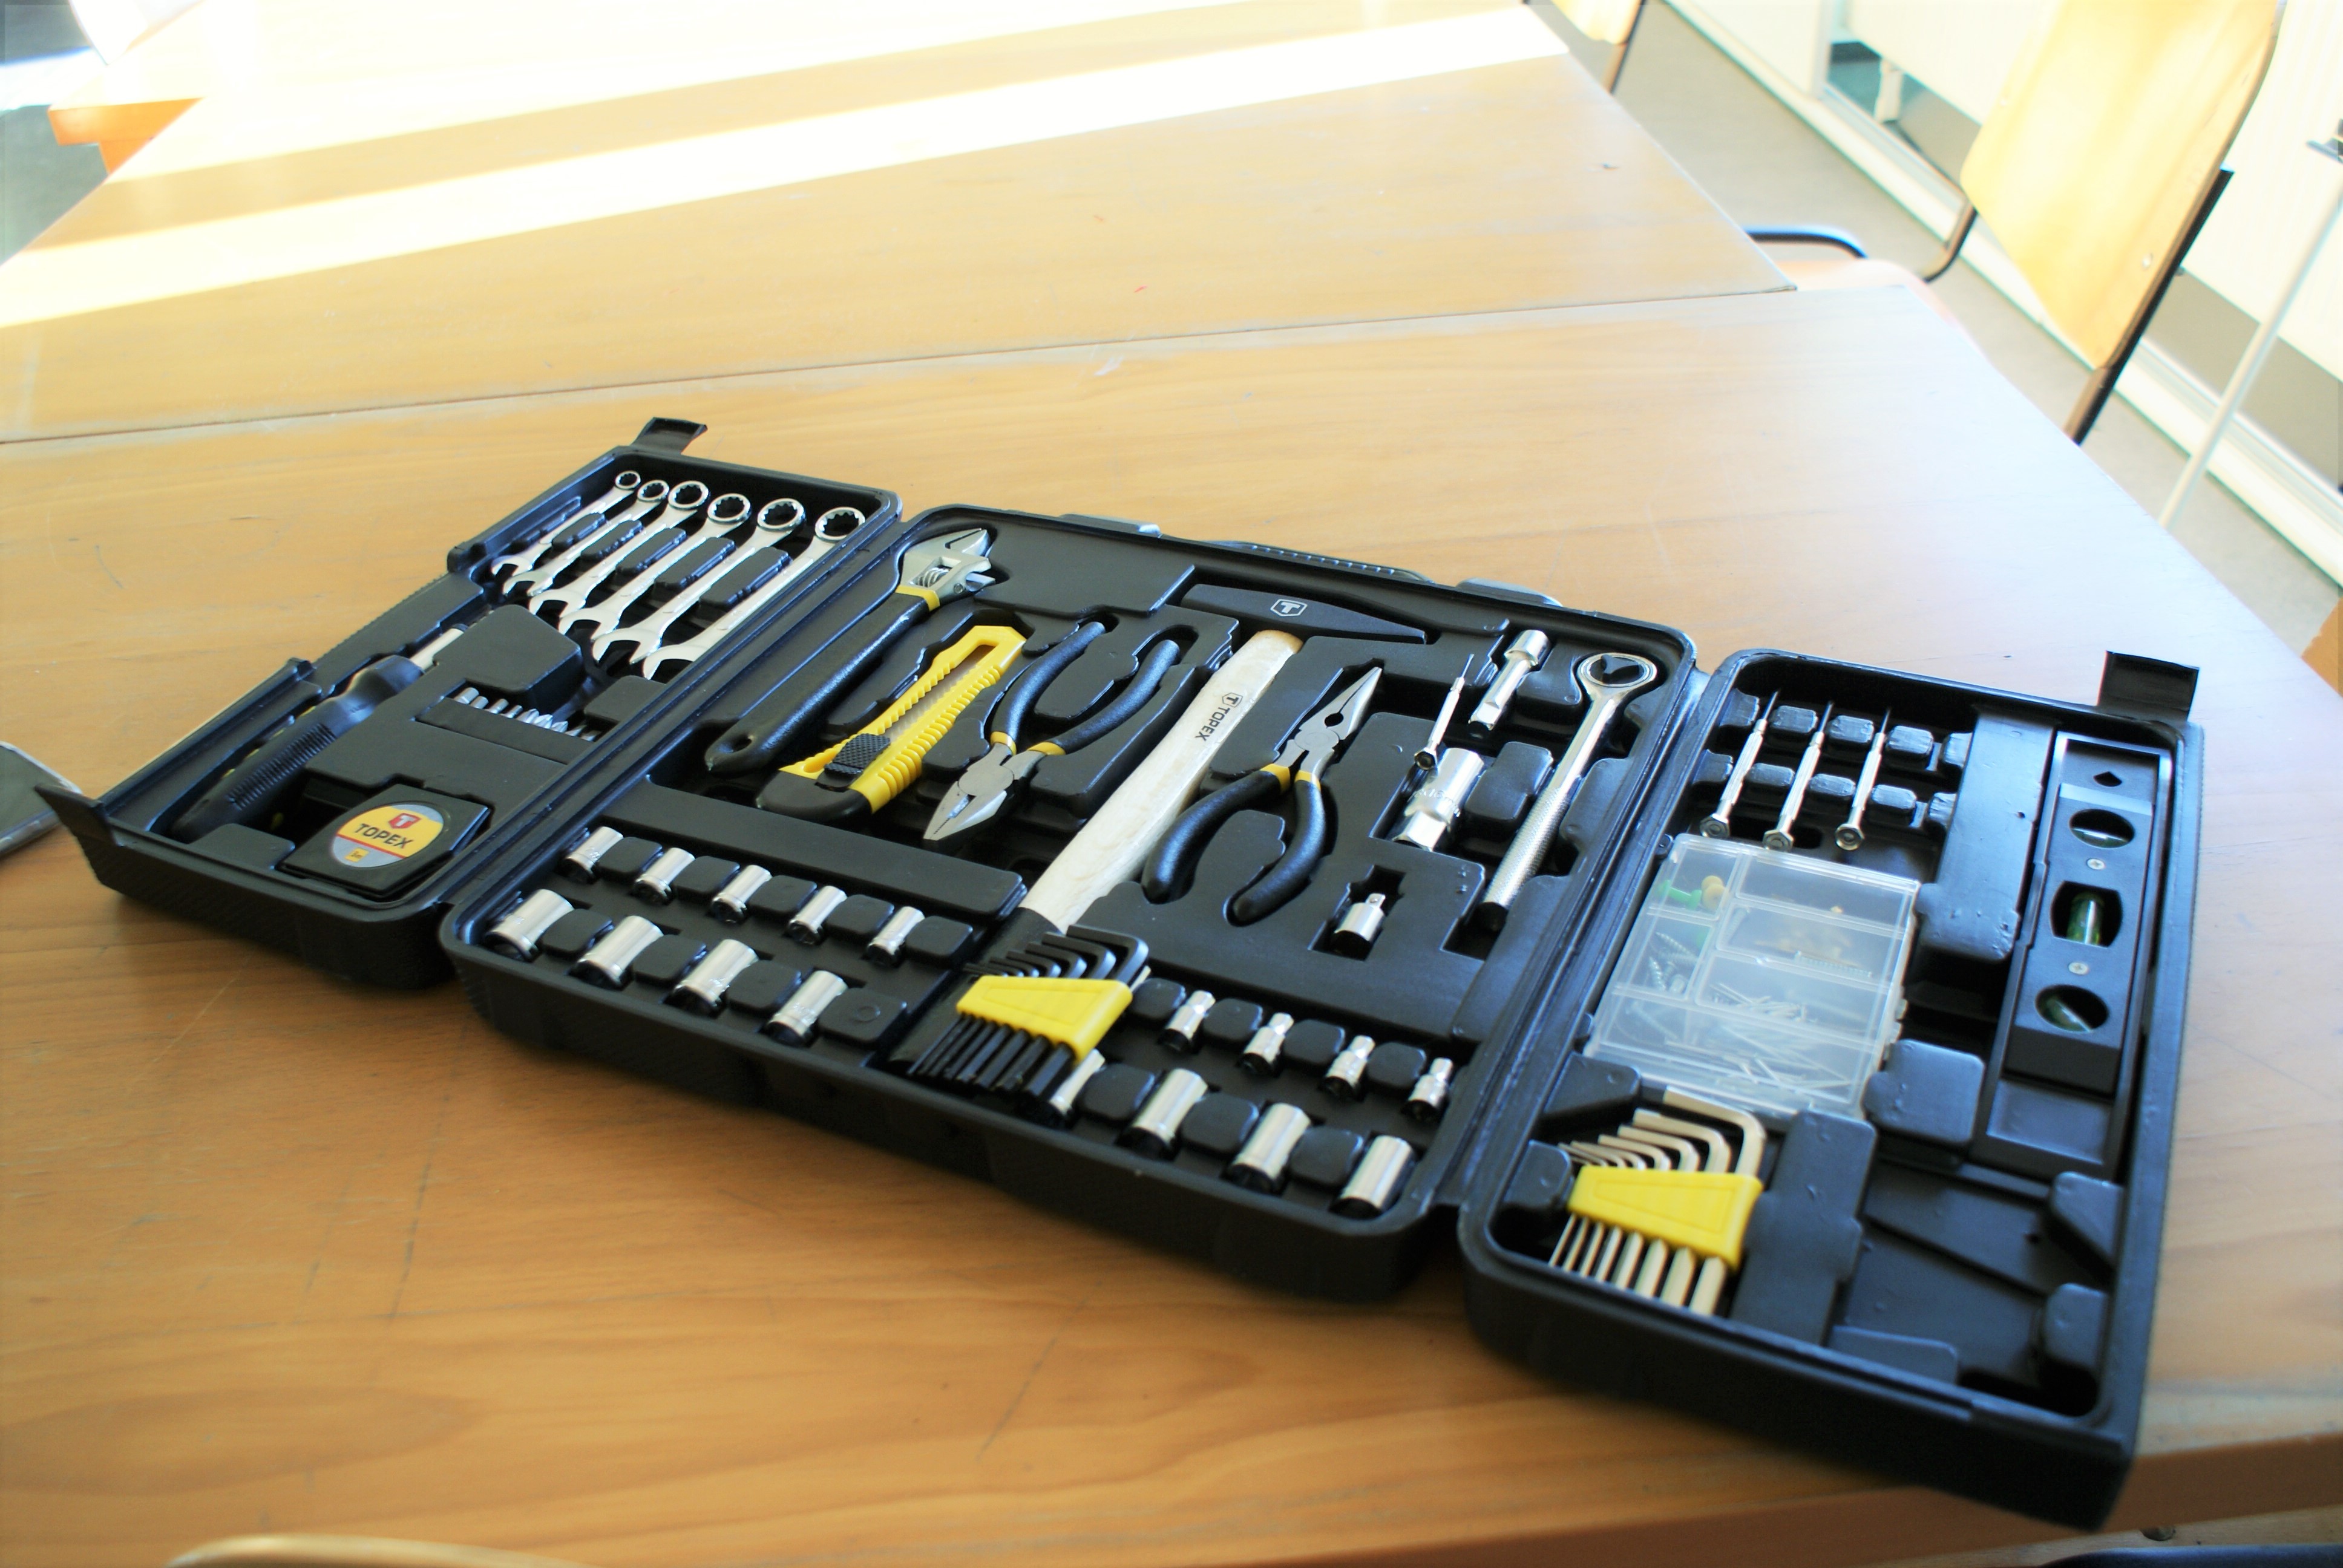 otwarte pudełko z narzędziami m.in. nożyk do taper, kombinerki, klucze, miarka, śrubokręt itp.